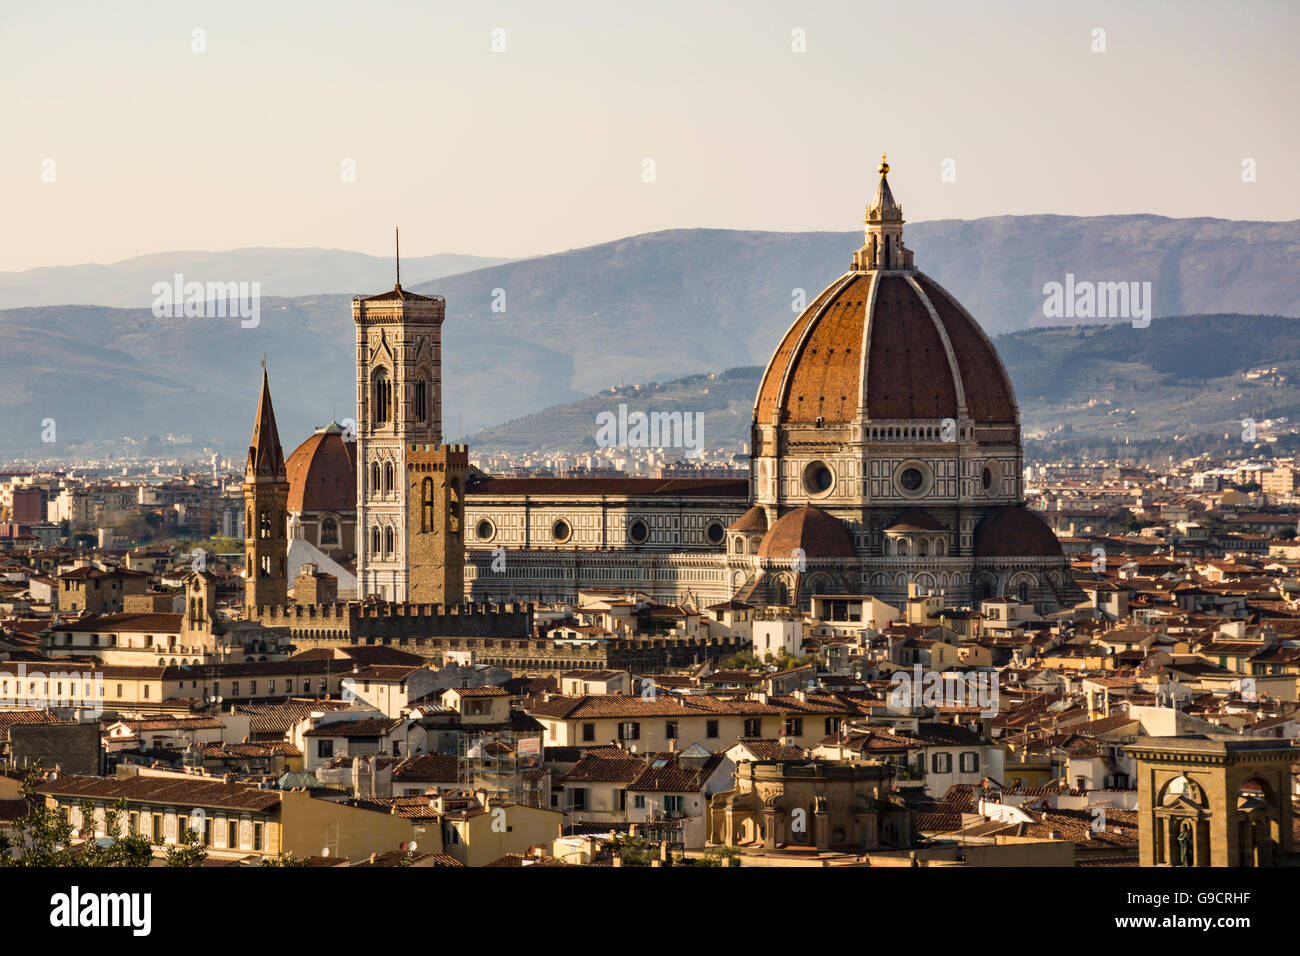 La Basílica de Santa Maria del Fiore (Duomo), la Catedral de Florencia, Toscana, Italia Foto de stock